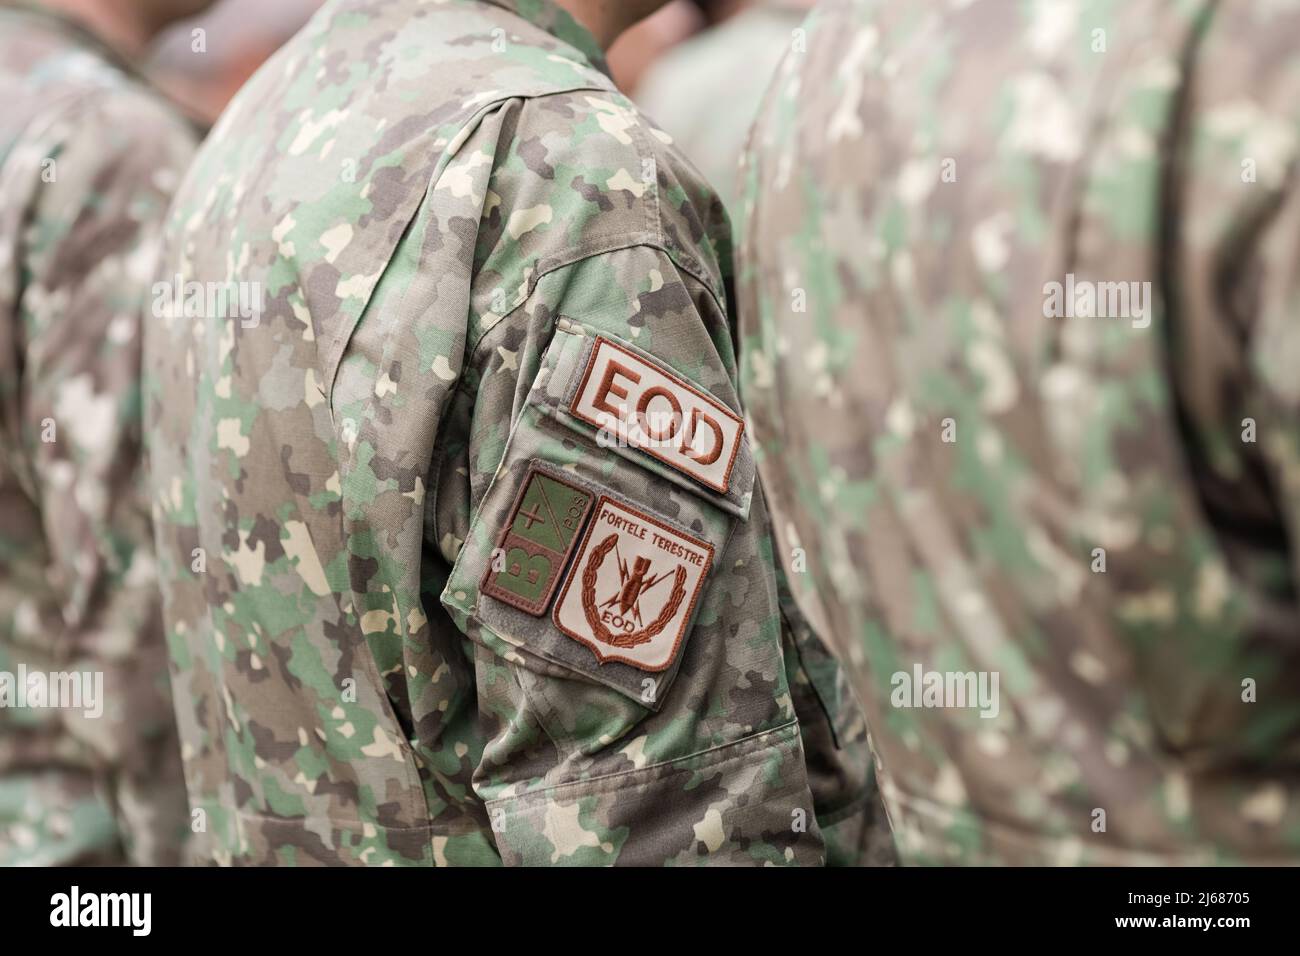 Bukarest, Rumänien - 28. April 2022: Geringe Tiefenschärfe mit einem EOD-Armband (brassard, Armreif) auf der Uniform eines rumänischen Soldaten. Stockfoto